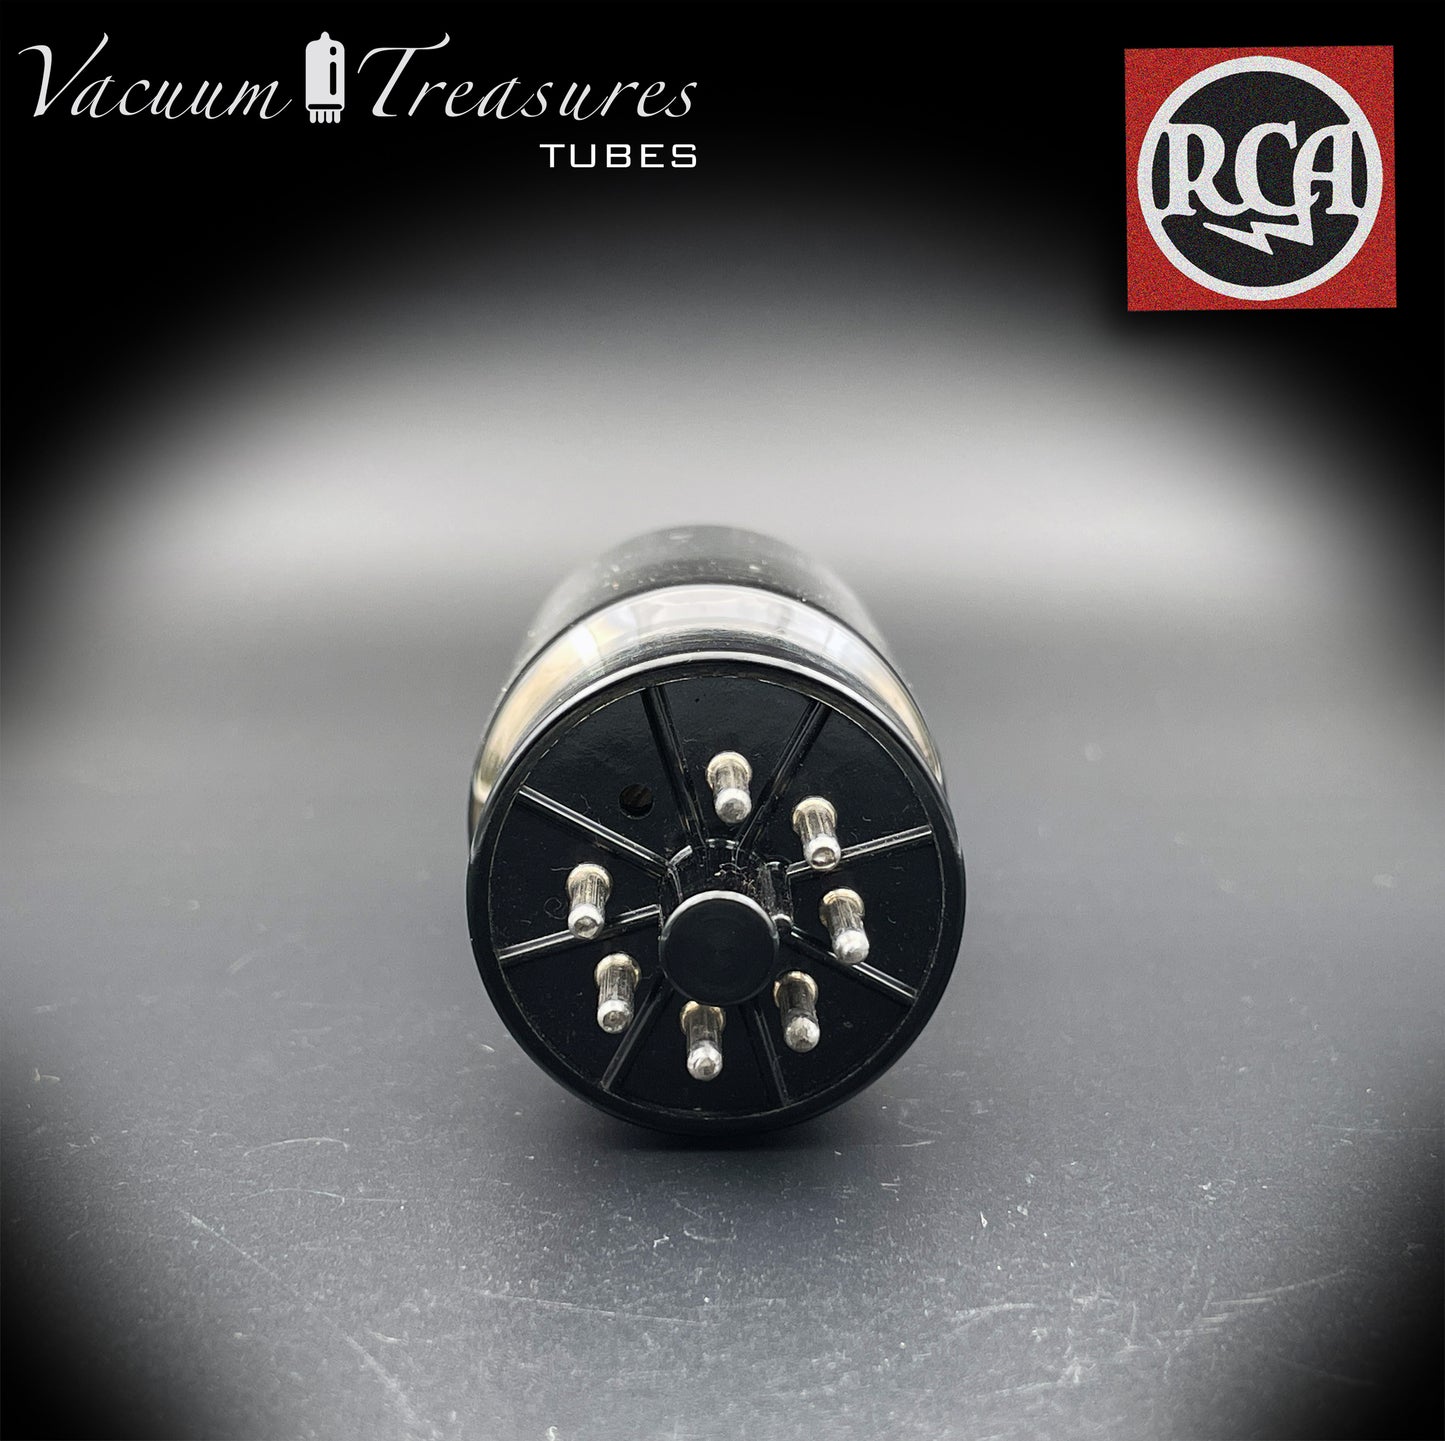 6L6GC RCA-Röhre mit schwarzer Plattenunterseite, DD-Getter-getestet, hergestellt in den USA